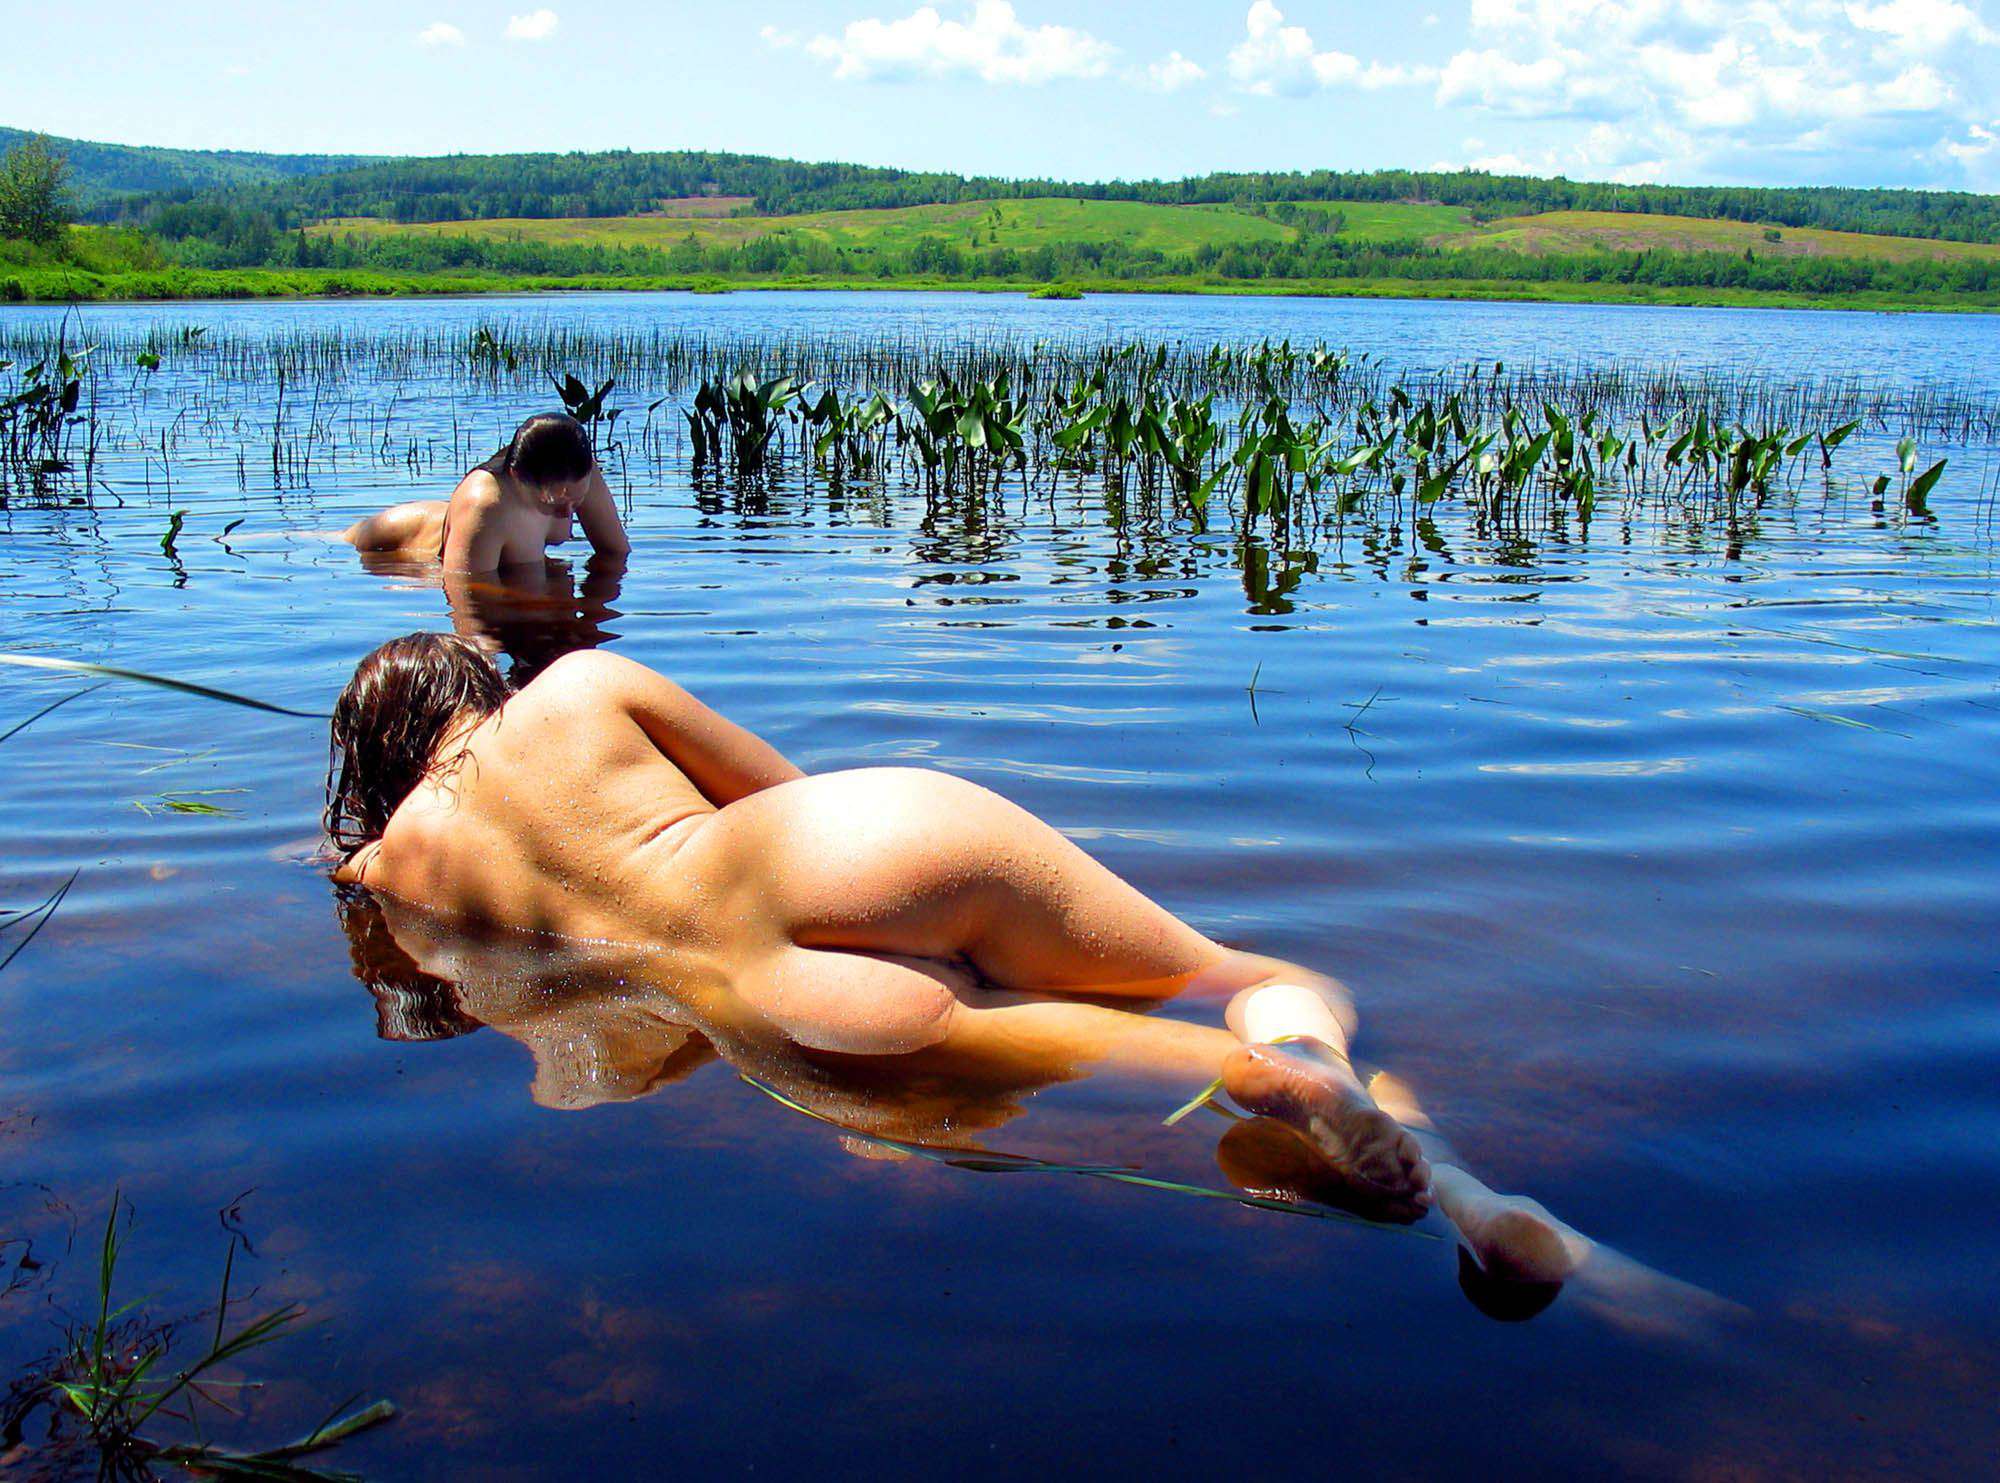 Девки в озере купались - русский порно фильм